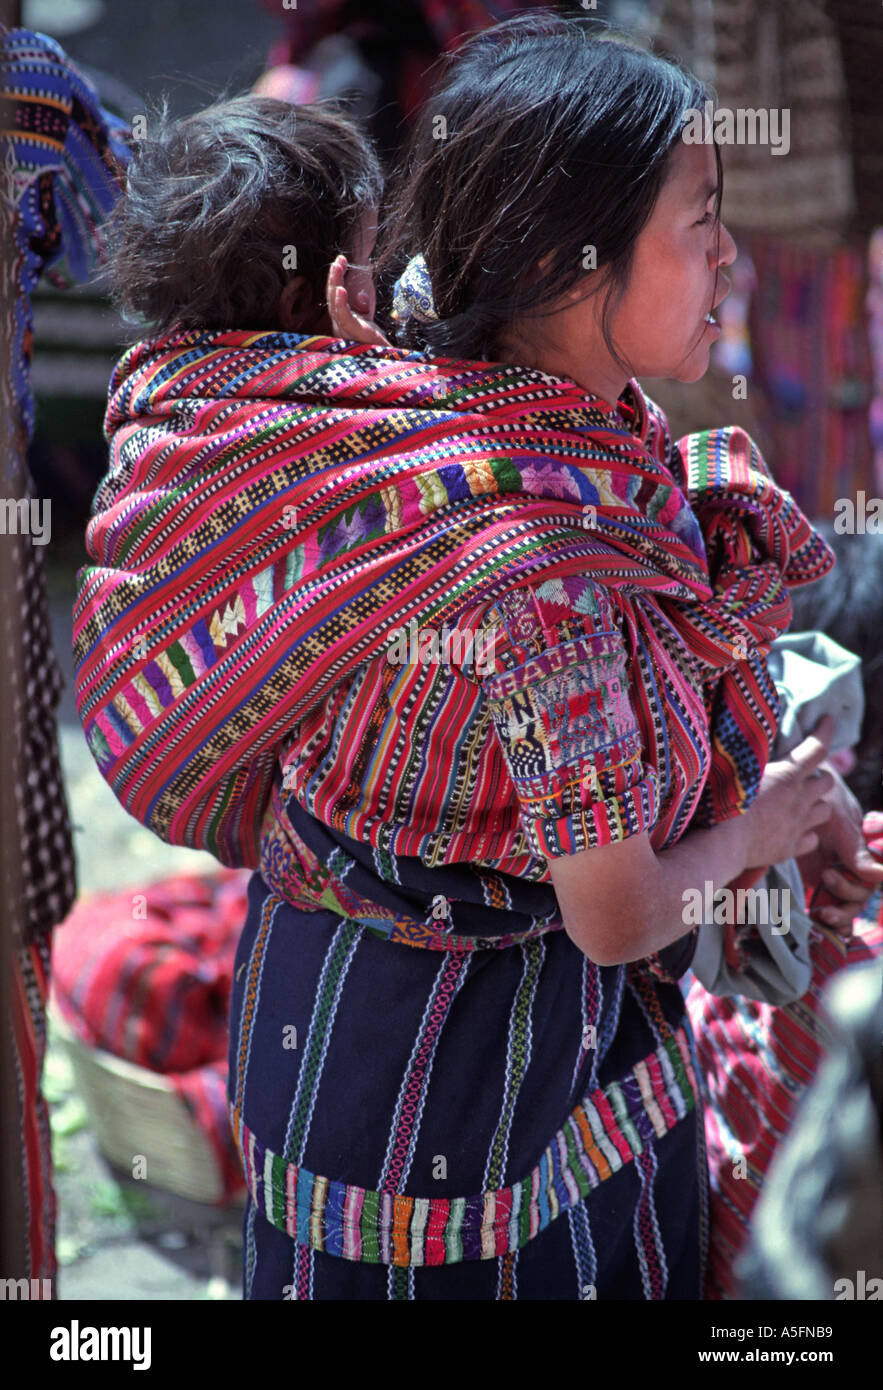 Femme Maya de Solola au port du marché des vêtements à sa communauté exerçant son bébé dans un châle tissé Guatemala Amérique C Banque D'Images